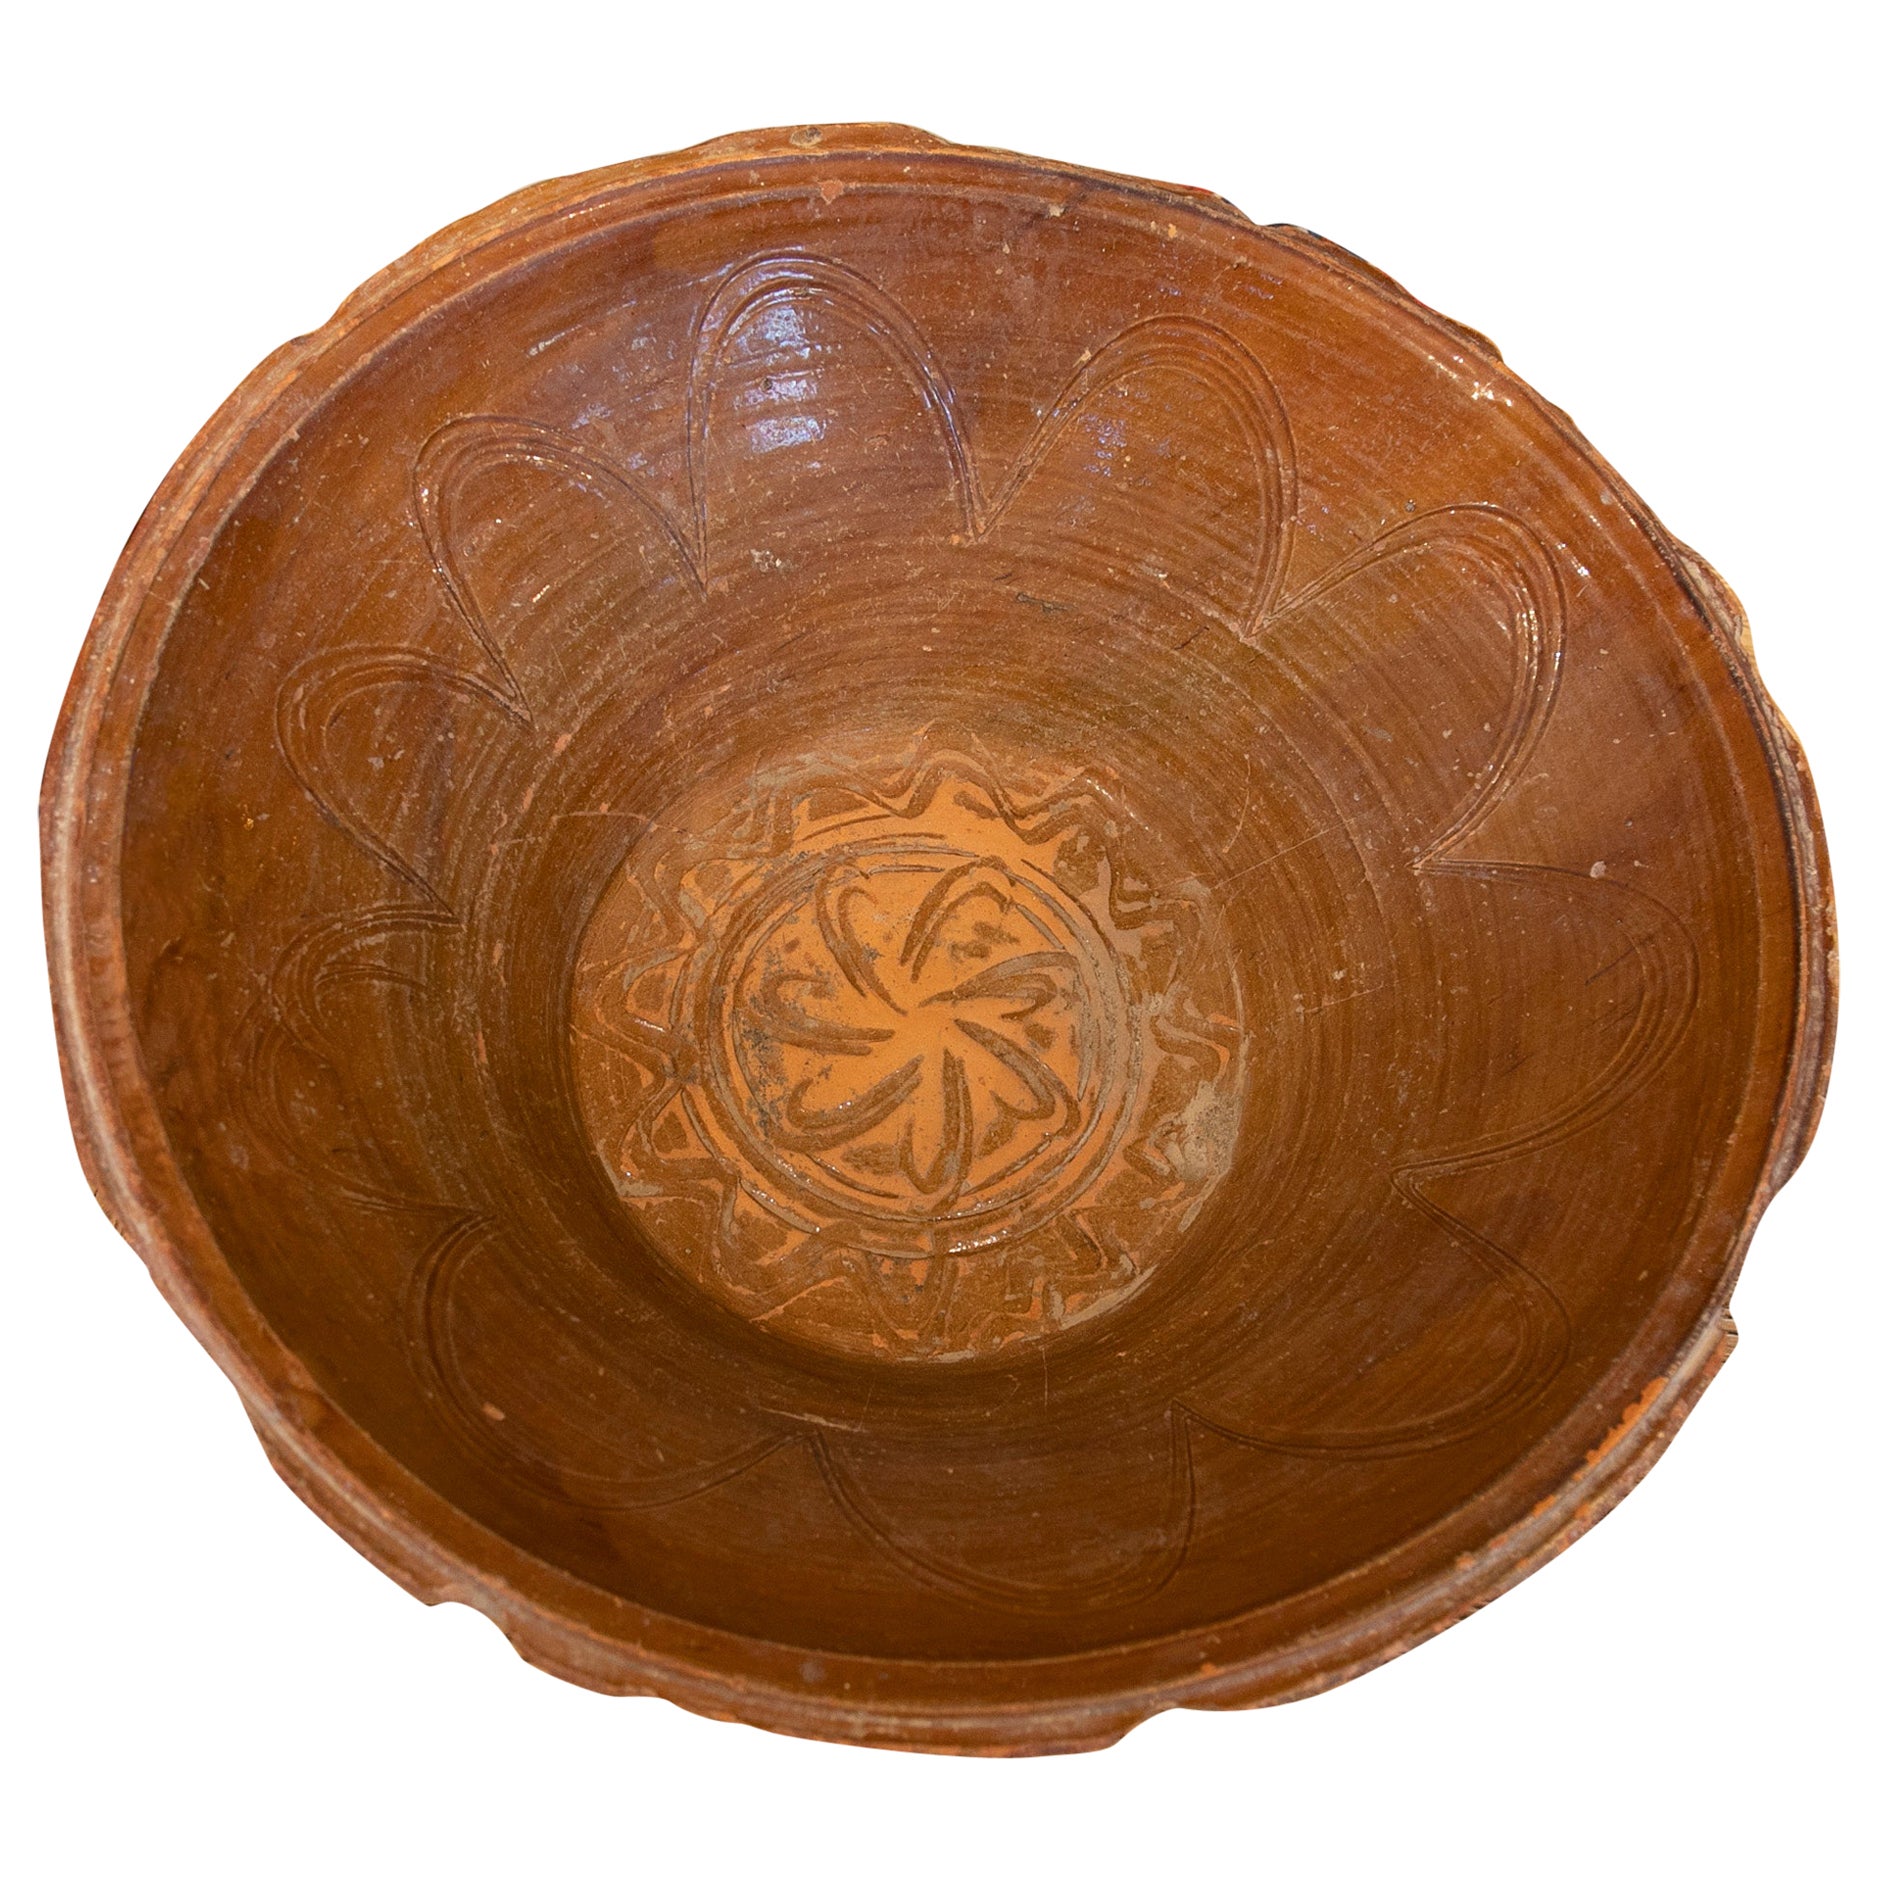 Spanischer kleiner Basin aus glasierter Keramik in Braun, dekoriert im mittleren Teil